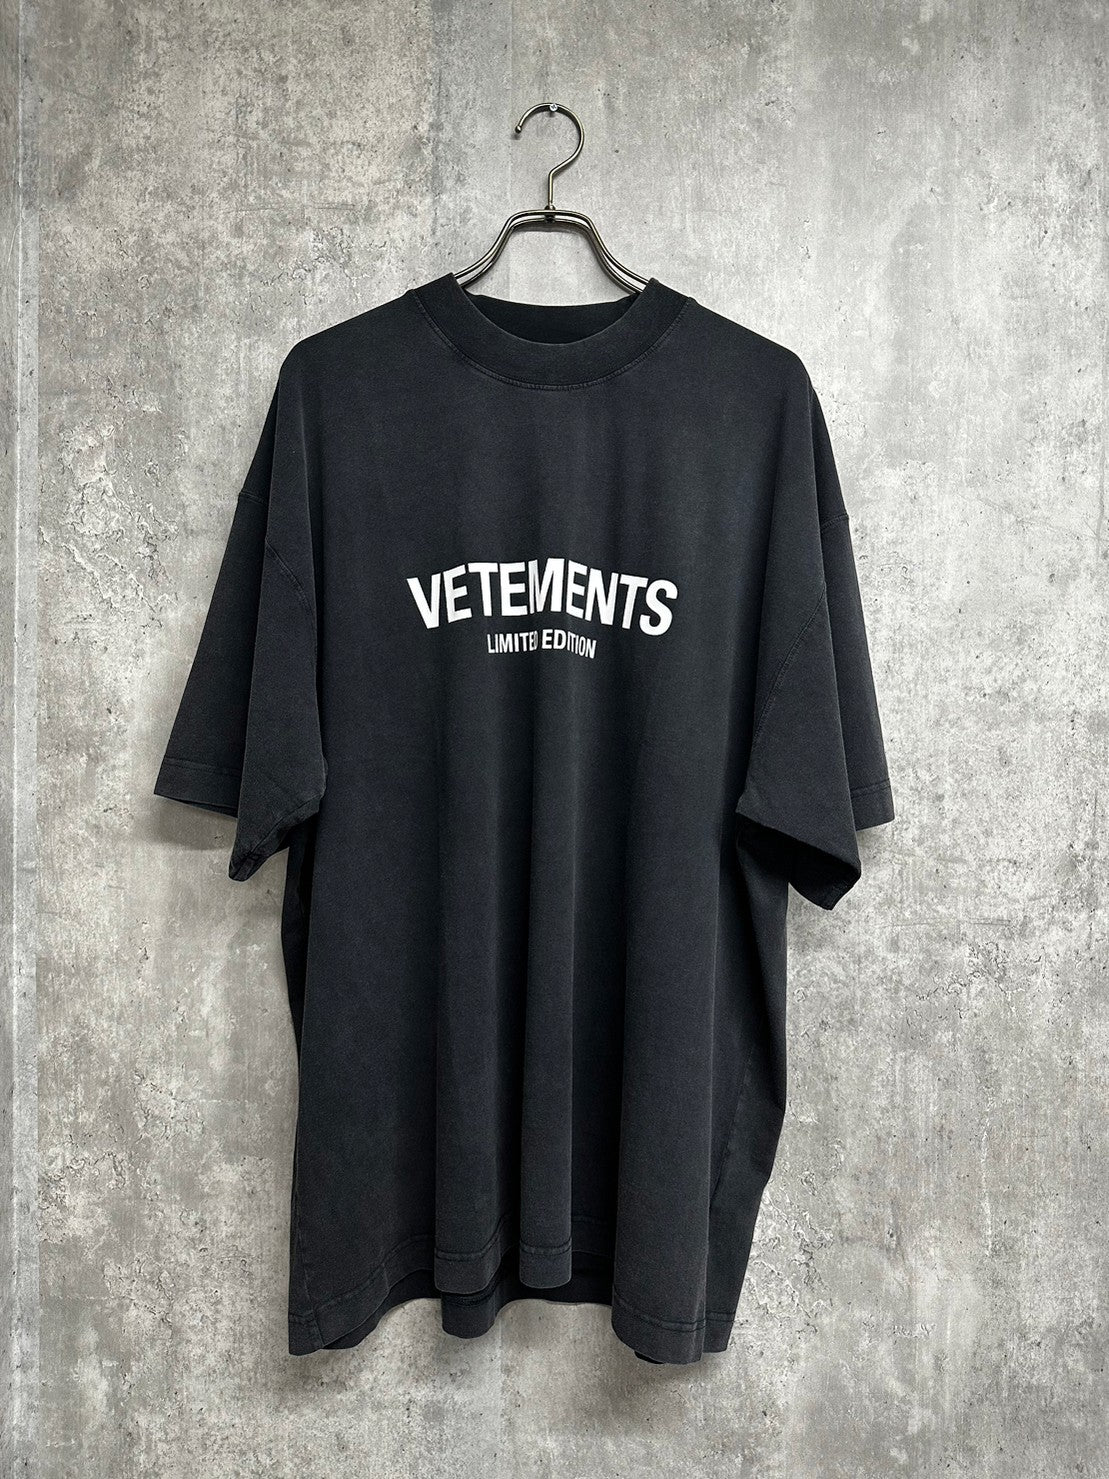 【新品】VETEMENTS Limited Edition T-shirts S